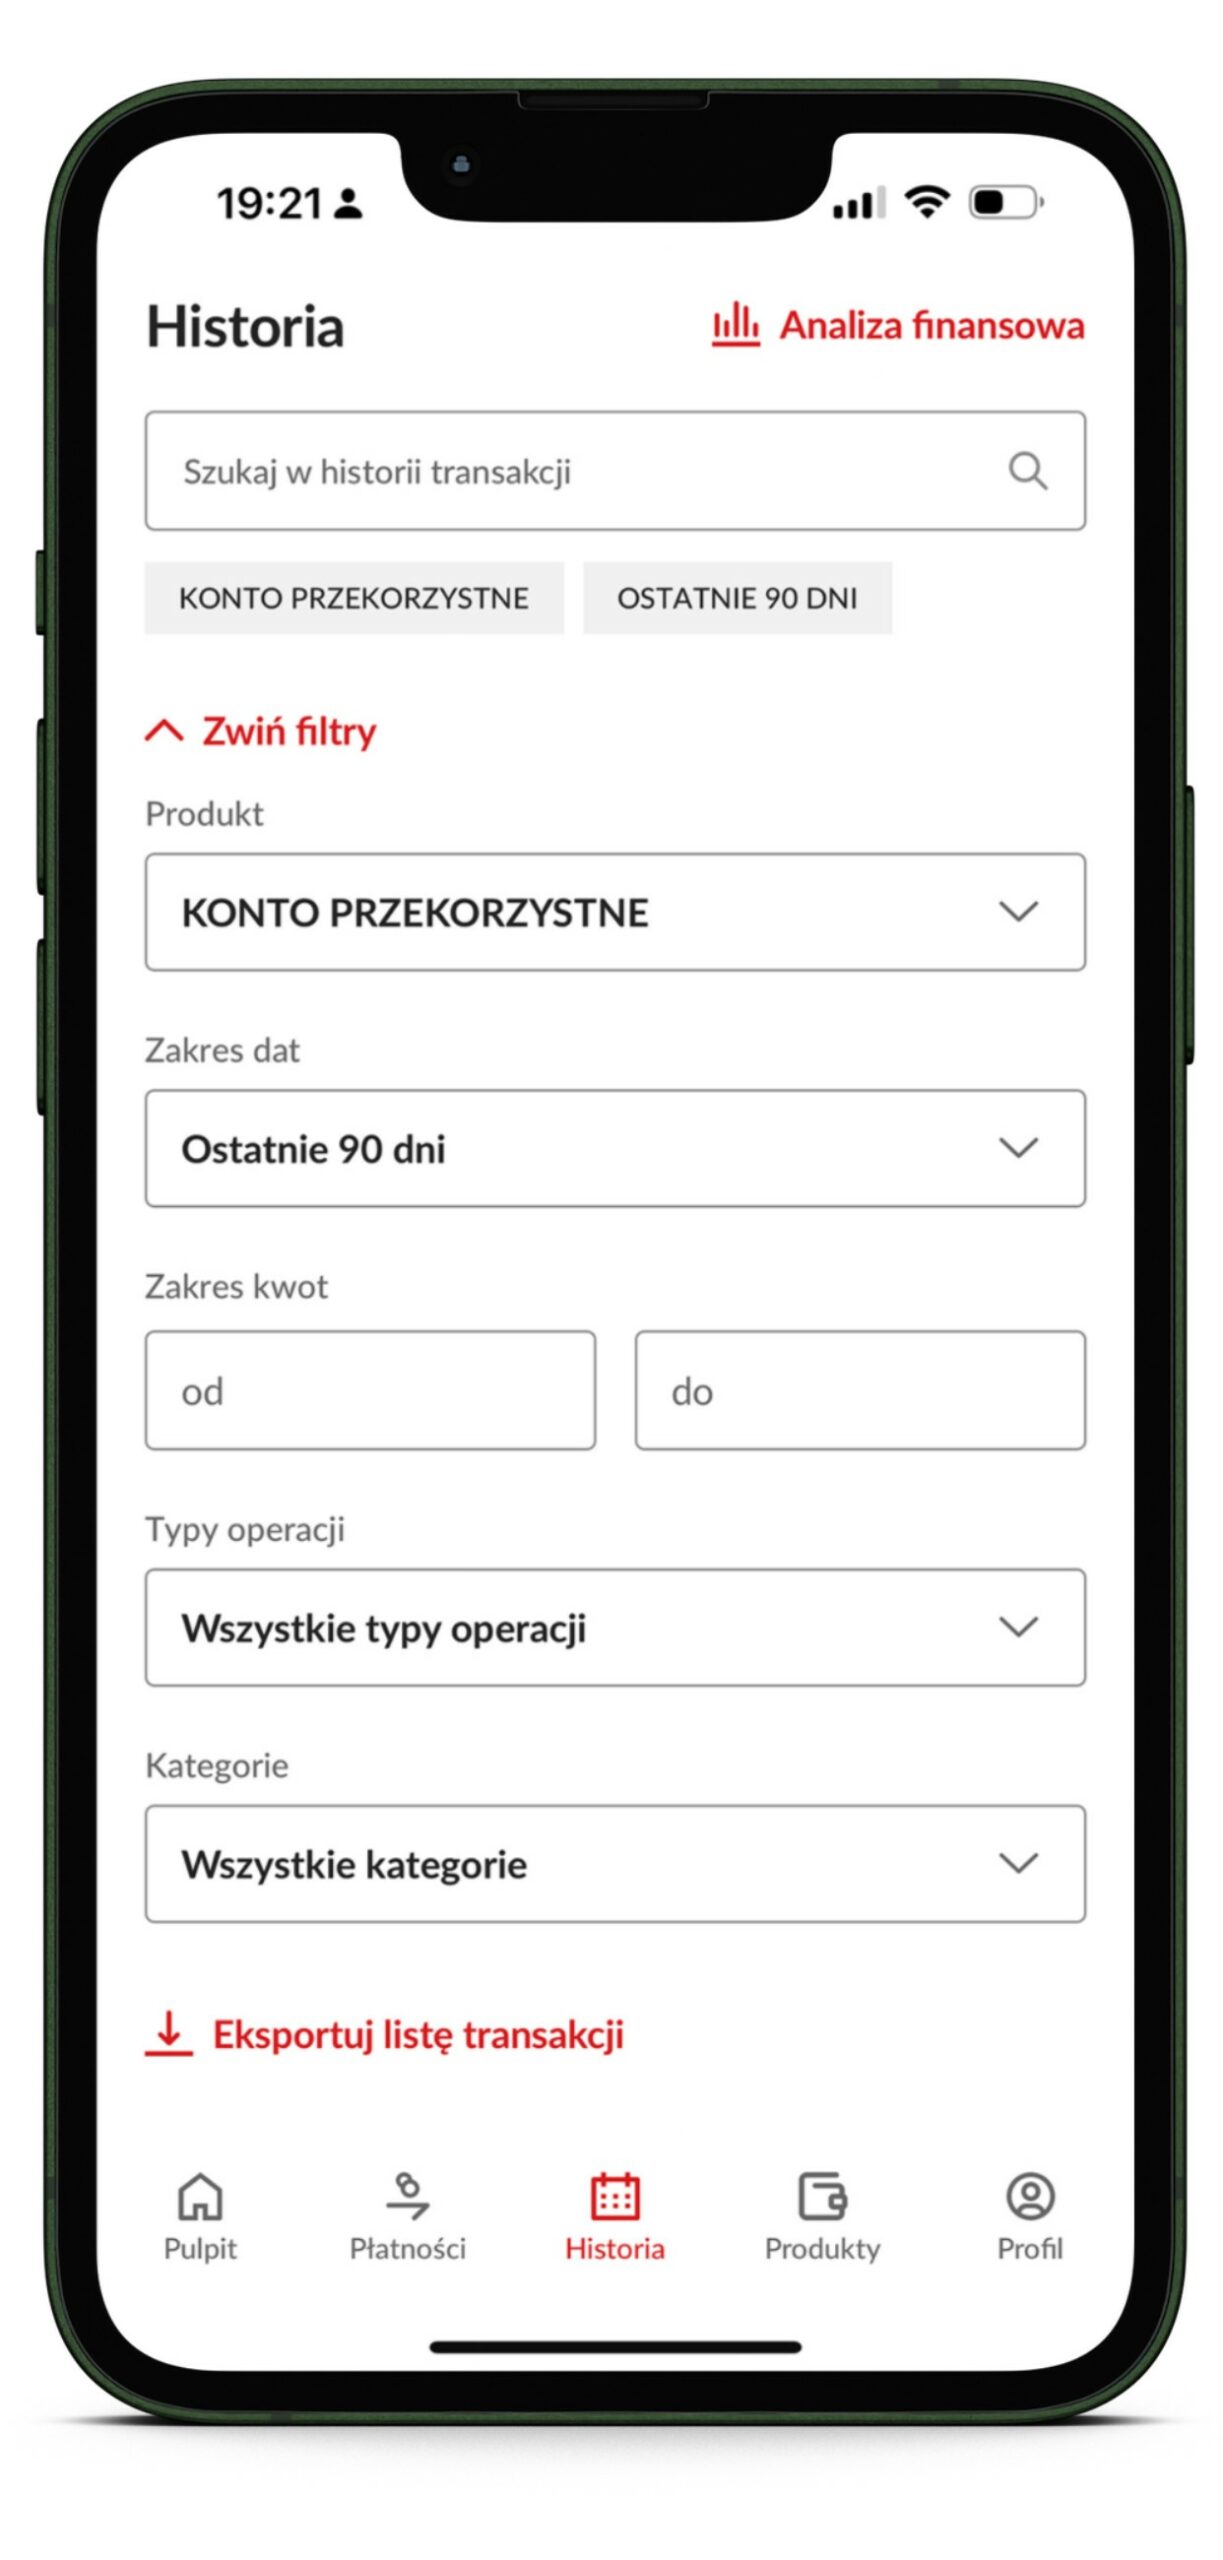 zrzut ekranu z aplikacji mobilnej PeoPay, przedstawiający proces generowania wyciągu bankowego. Na ekranie widoczne są pola do wyboru zakresu dat, zakresu kwot oraz przycisk eksportu listy transakcji